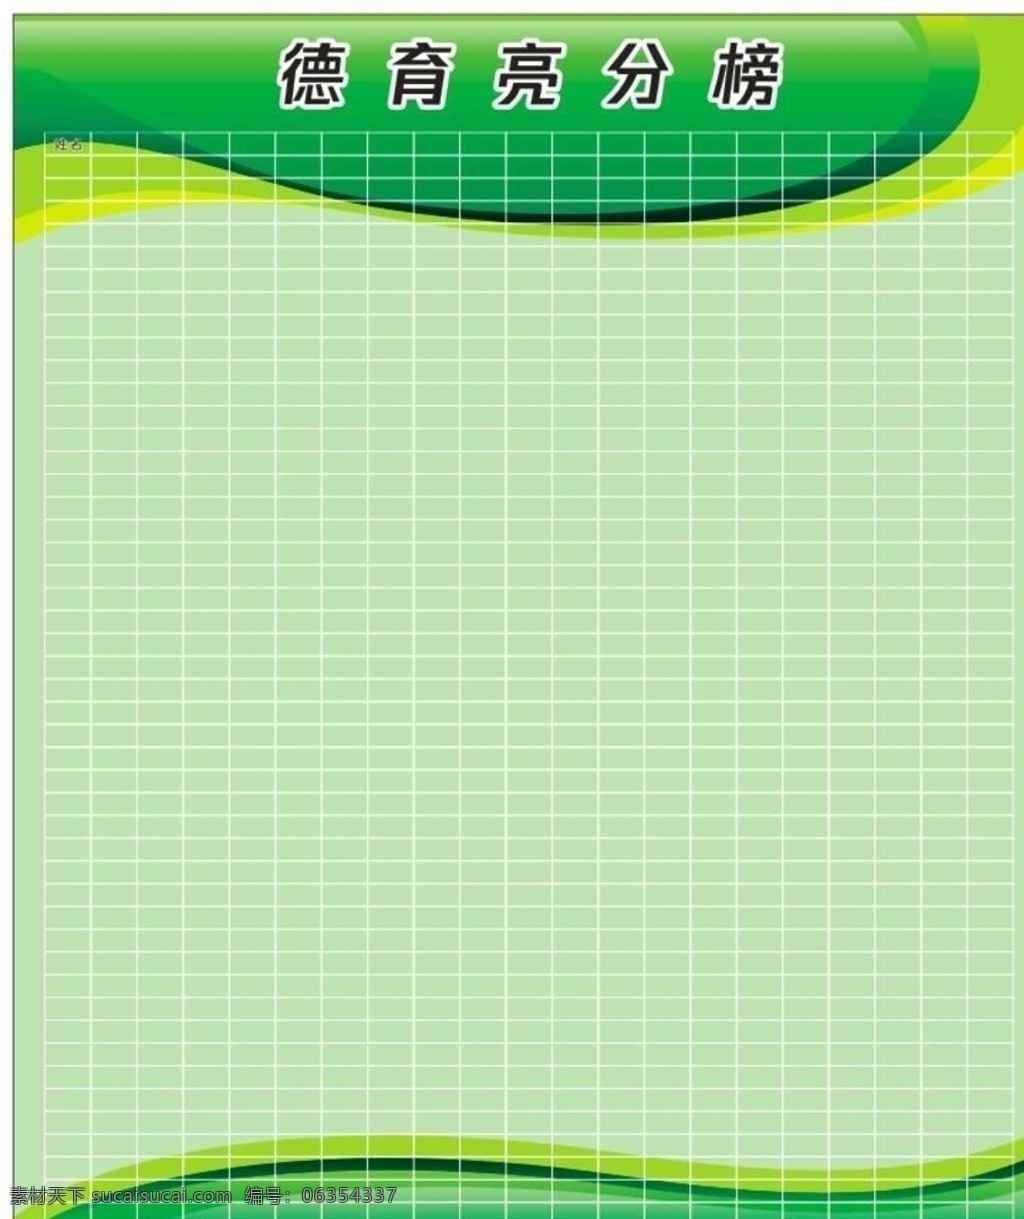 德育量化图片 德育量化 德育积分 绿色背景 积分 表格 展板 展板背景